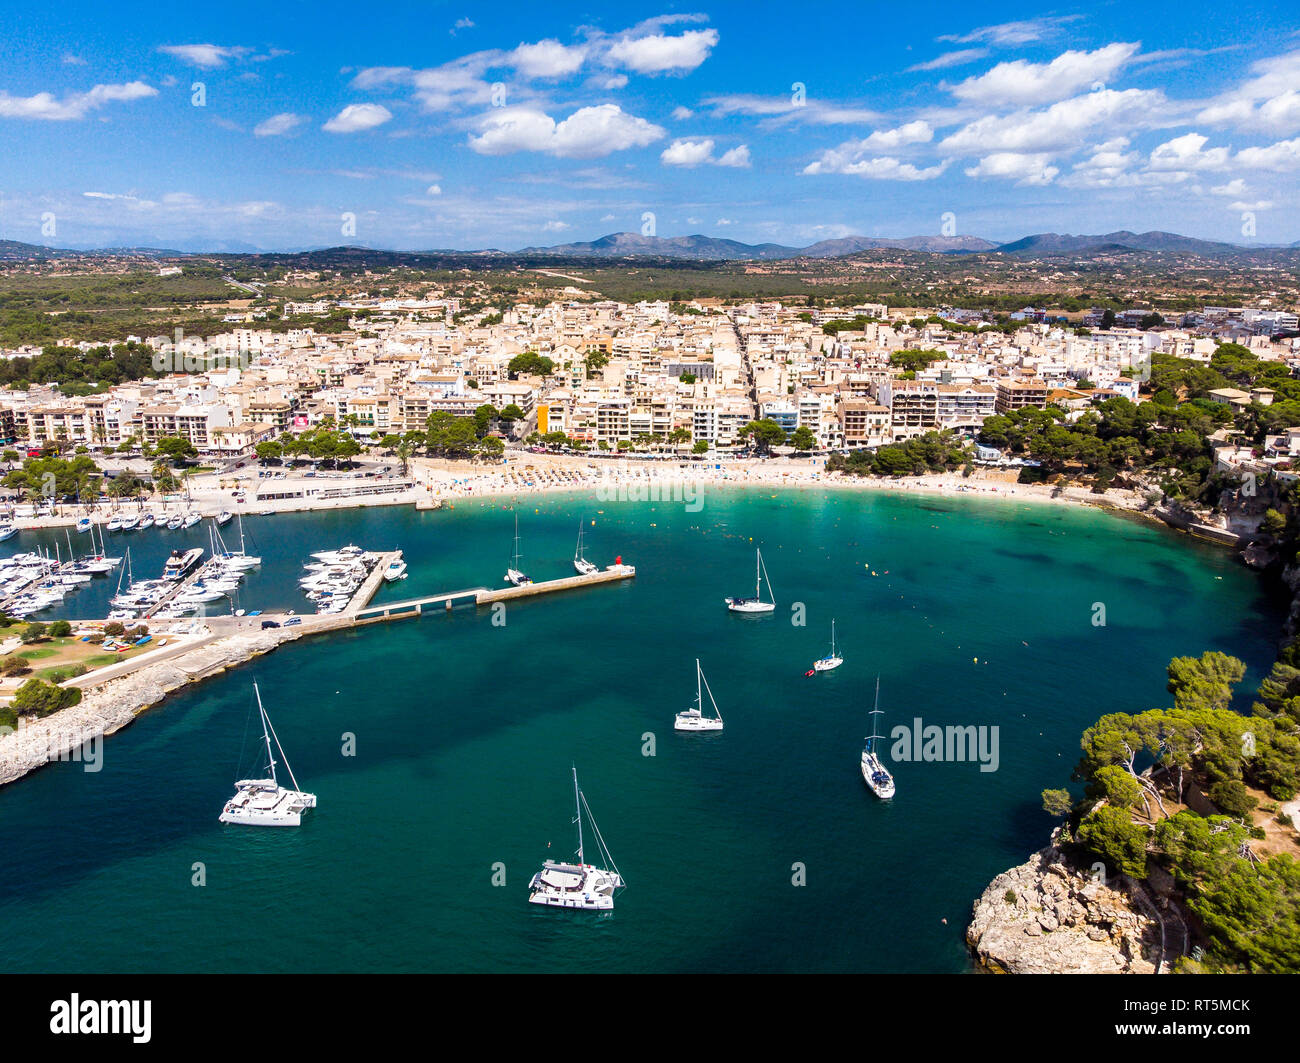 Spagna, Baleares, Mallorca, Porto Cristo, Cala Manacor, costa con ville e porto naturale Foto Stock